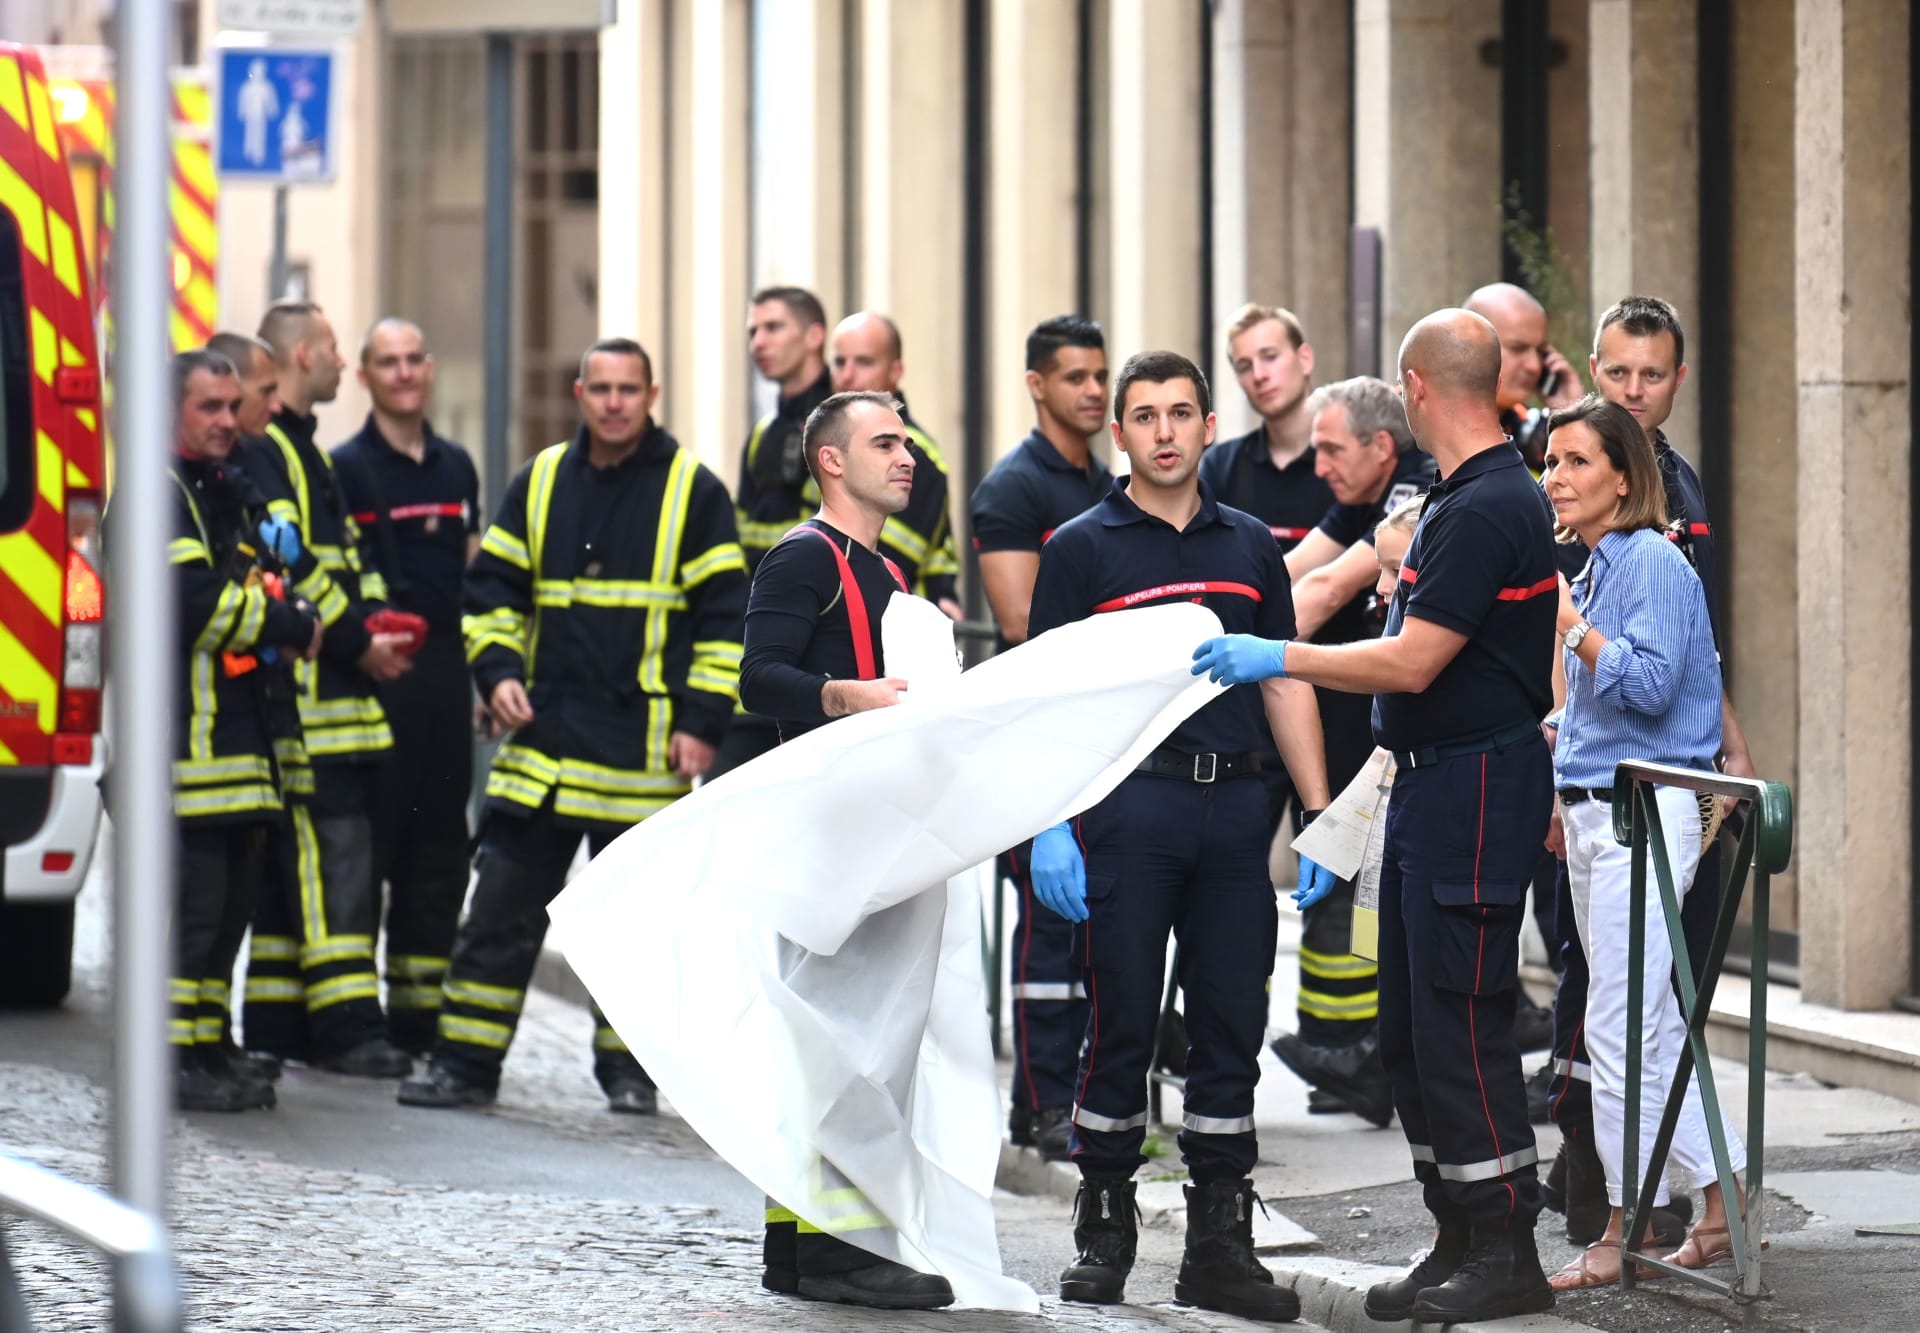 الشرطة الفرنسية: إصابة 7 أشخاص إثر انفجار في ليون 